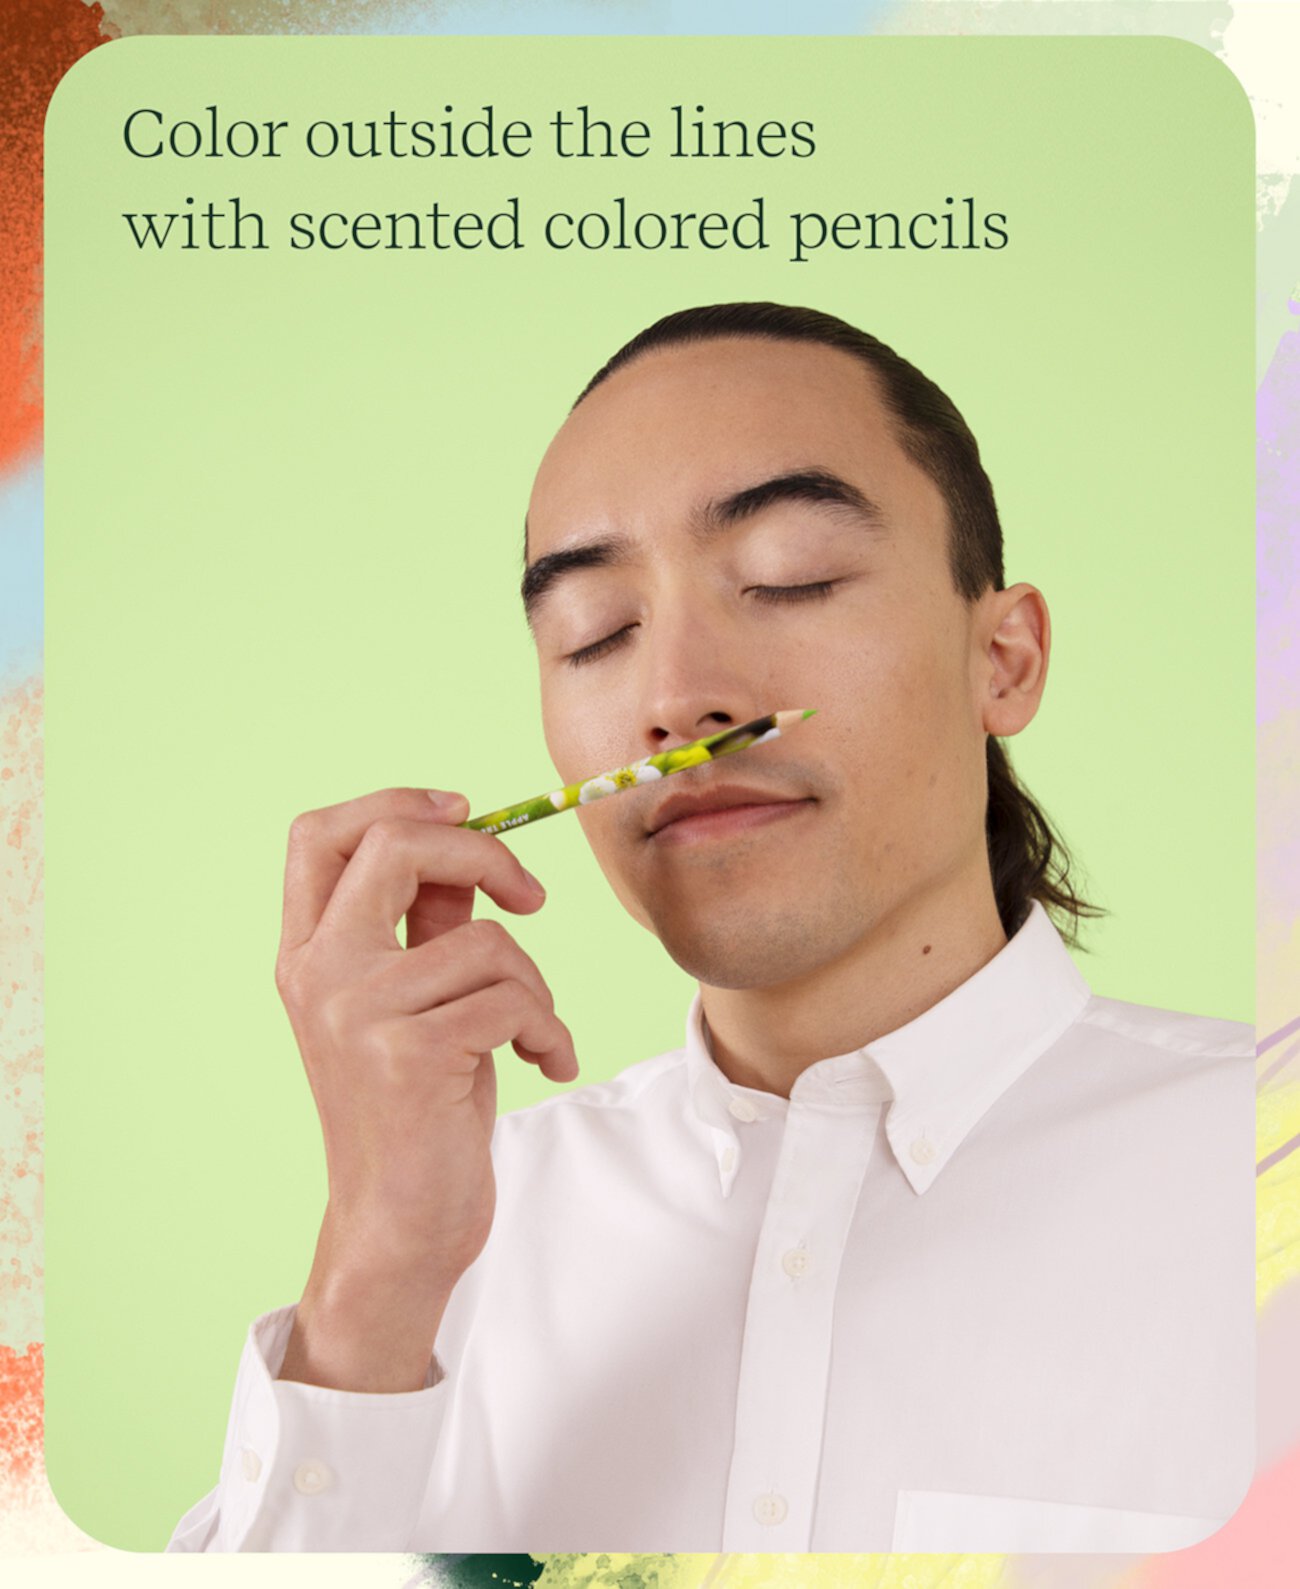 Ароматические цветные карандаши Rub & Sniff — 10 шт., наполненные смесями эфирных масел Lifelines